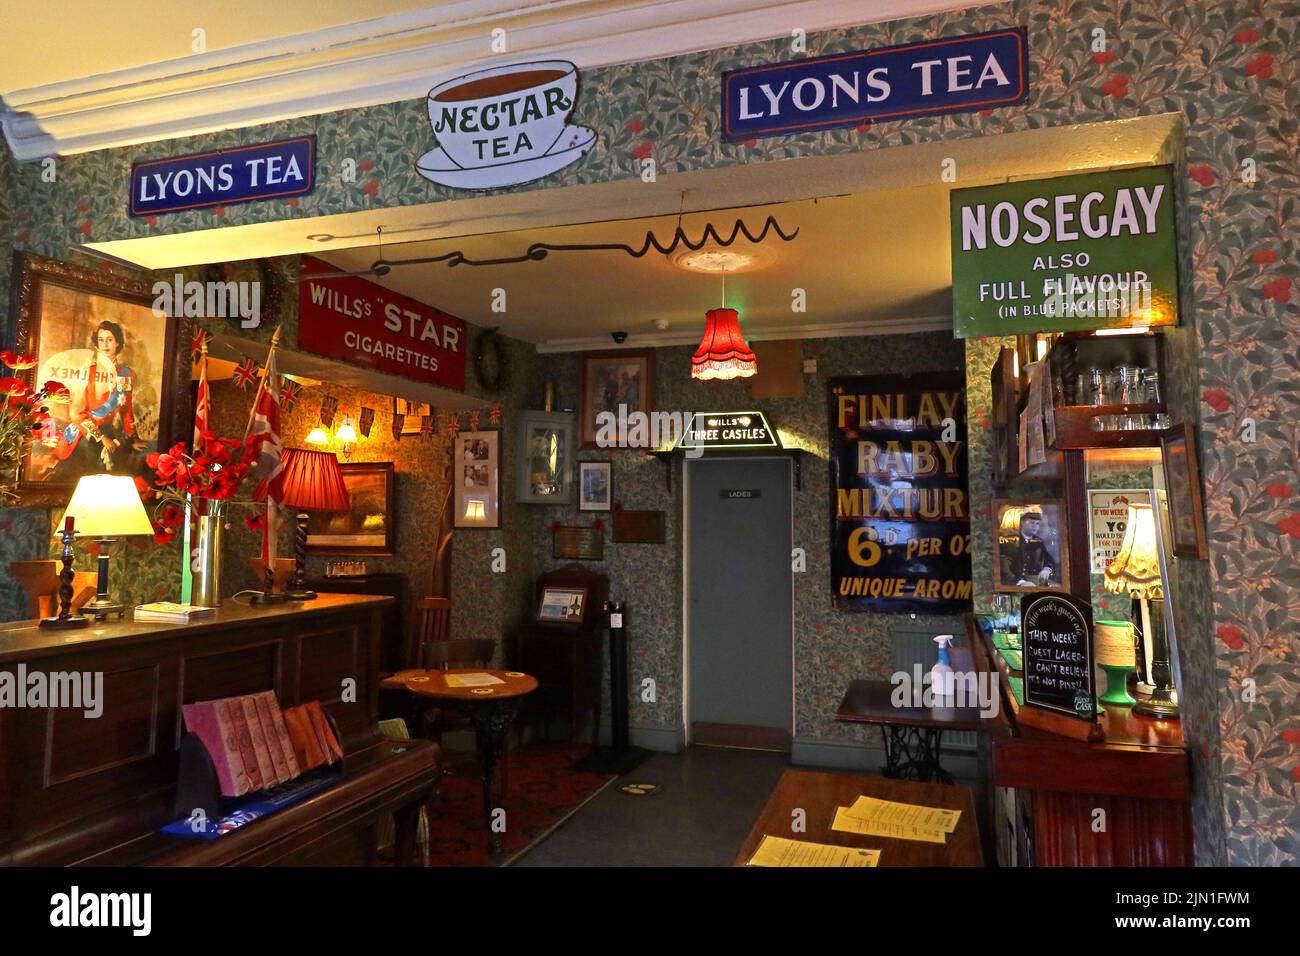 Publicités pour Lyons Tea, nosegay aussi plein de saveur, Wills, intérieur de l'Albion Inn, Volunteer St / Park St, Chester, Cheshire, Angleterre, Royaume-Uni, CH1 1RN Banque D'Images